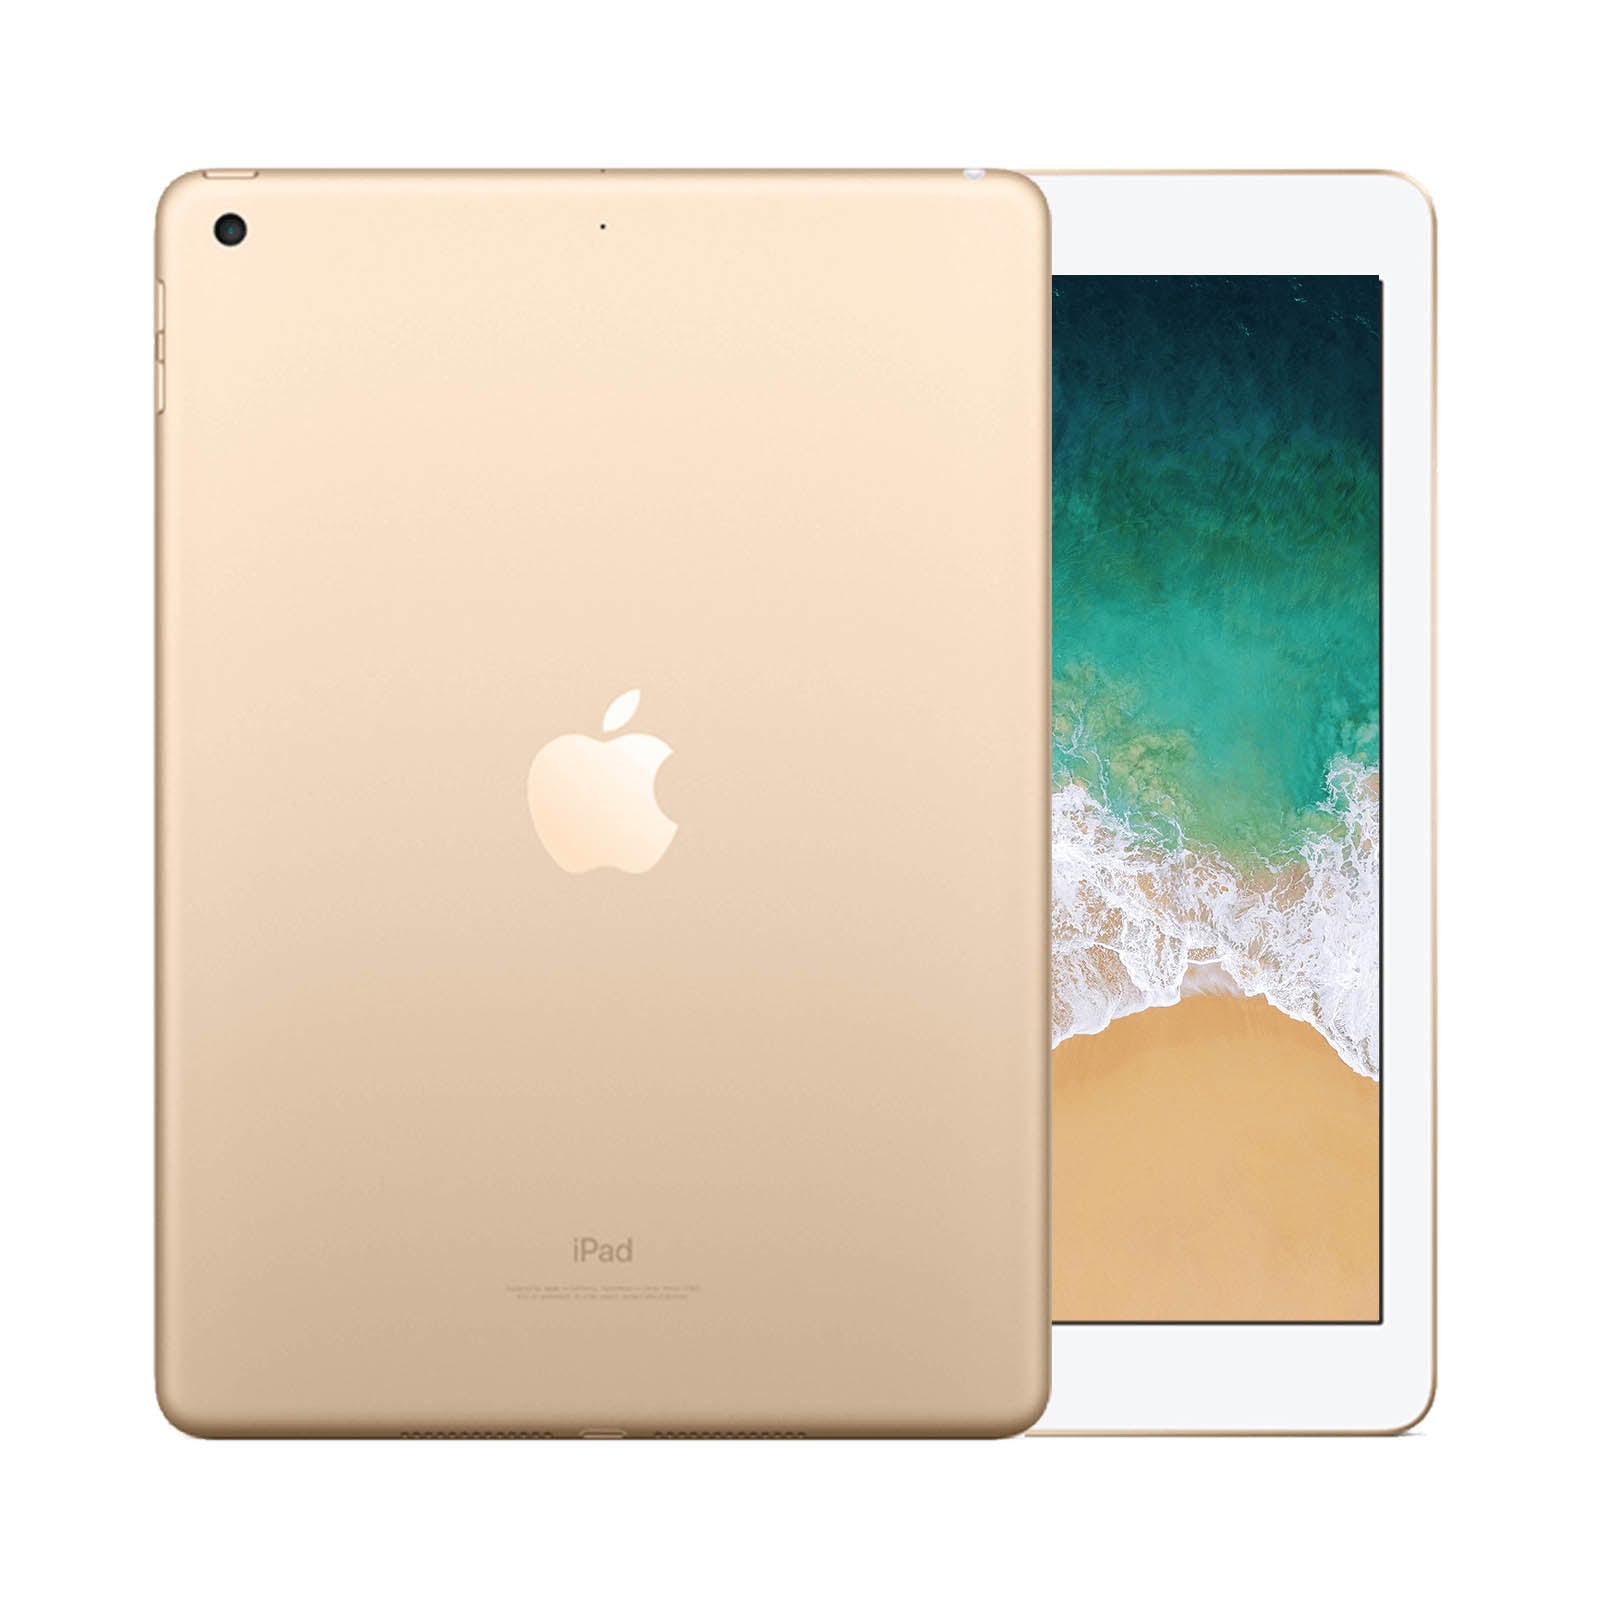 Apple iPad 5 128GB WiFi Gold - Very Good